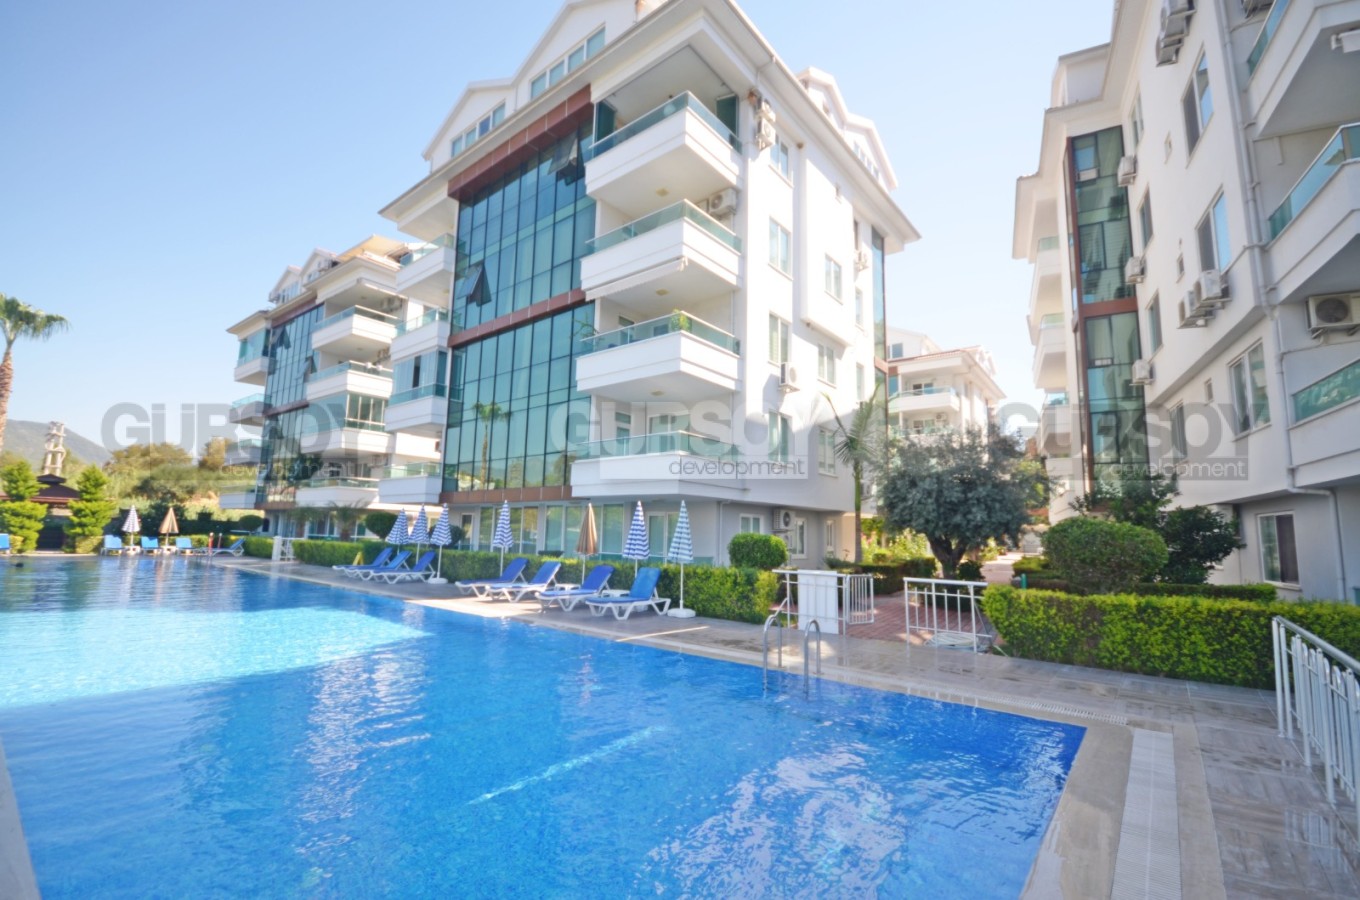 Дизайнерская квартира 1+1 возле набережной реки Димчай, 60 м2. в Турции - фото 1